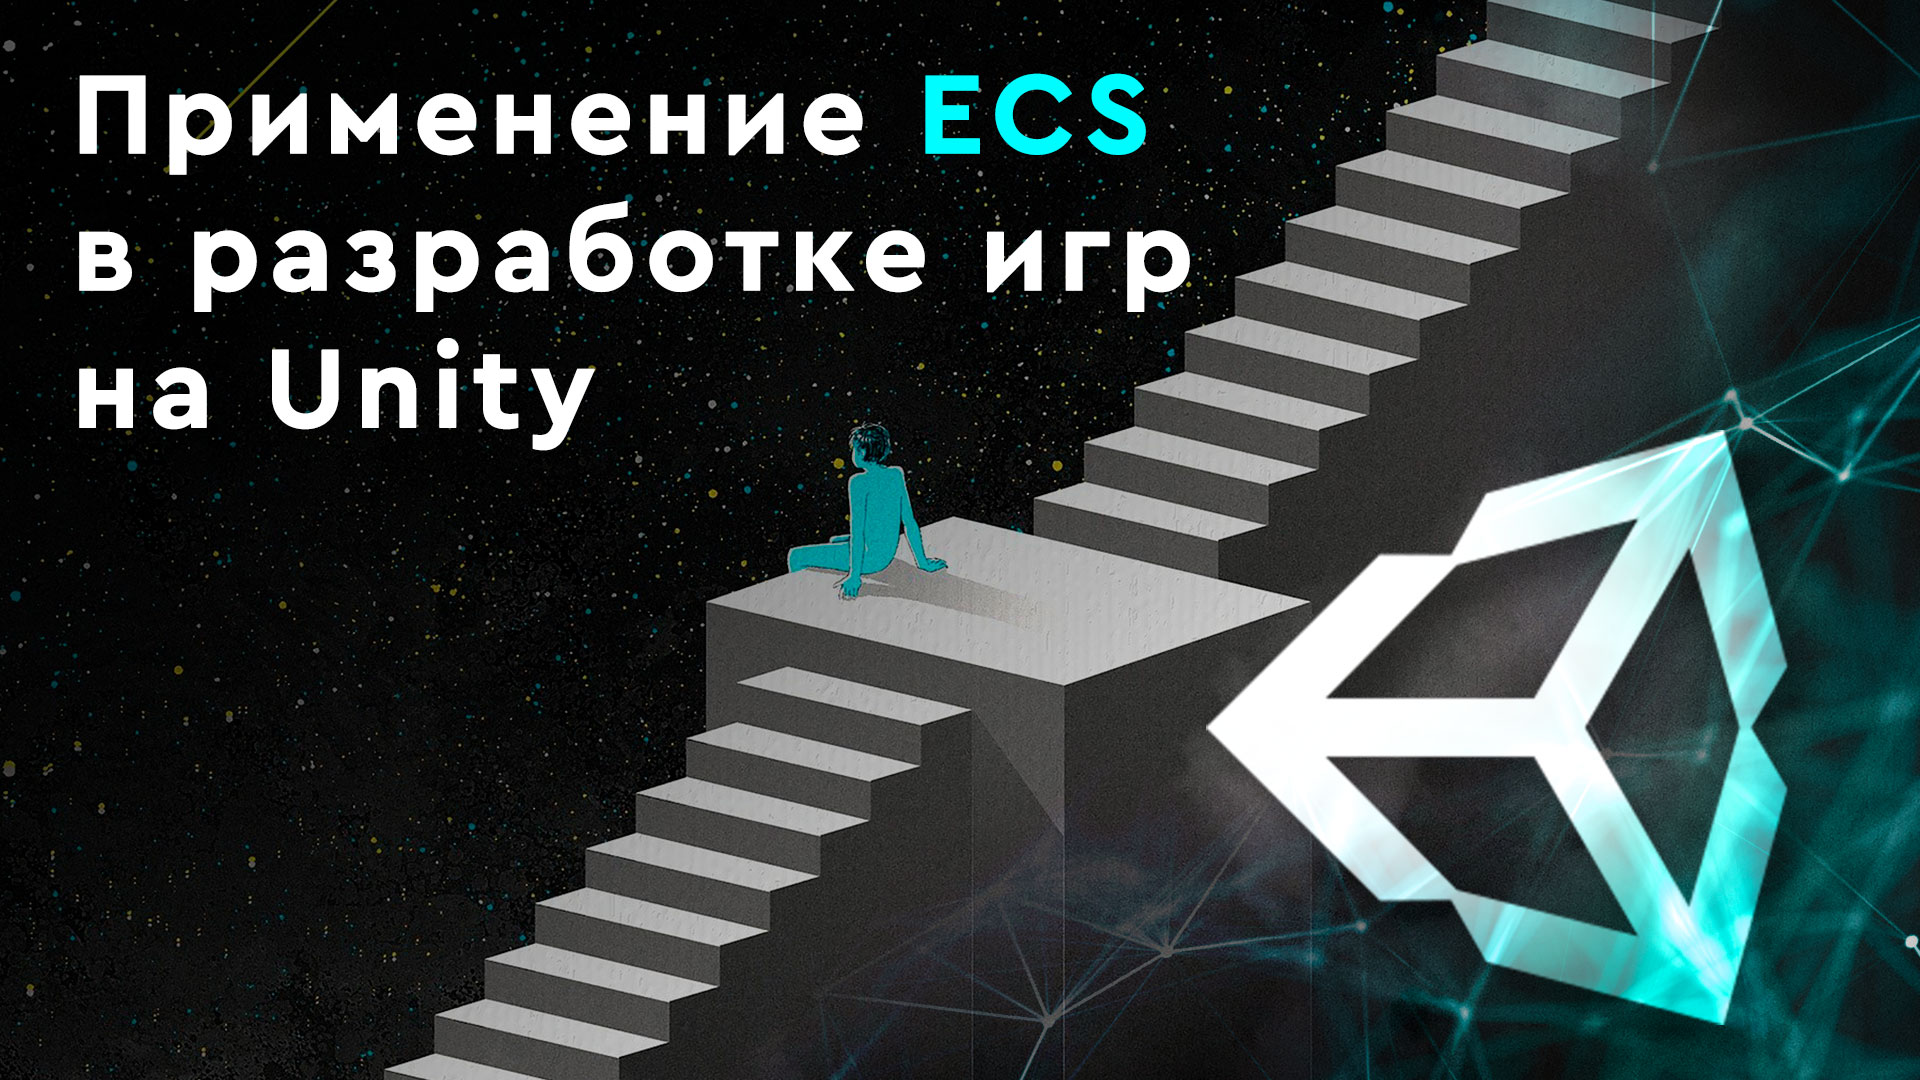 Застосування ECS для розробки ігор на Unity.